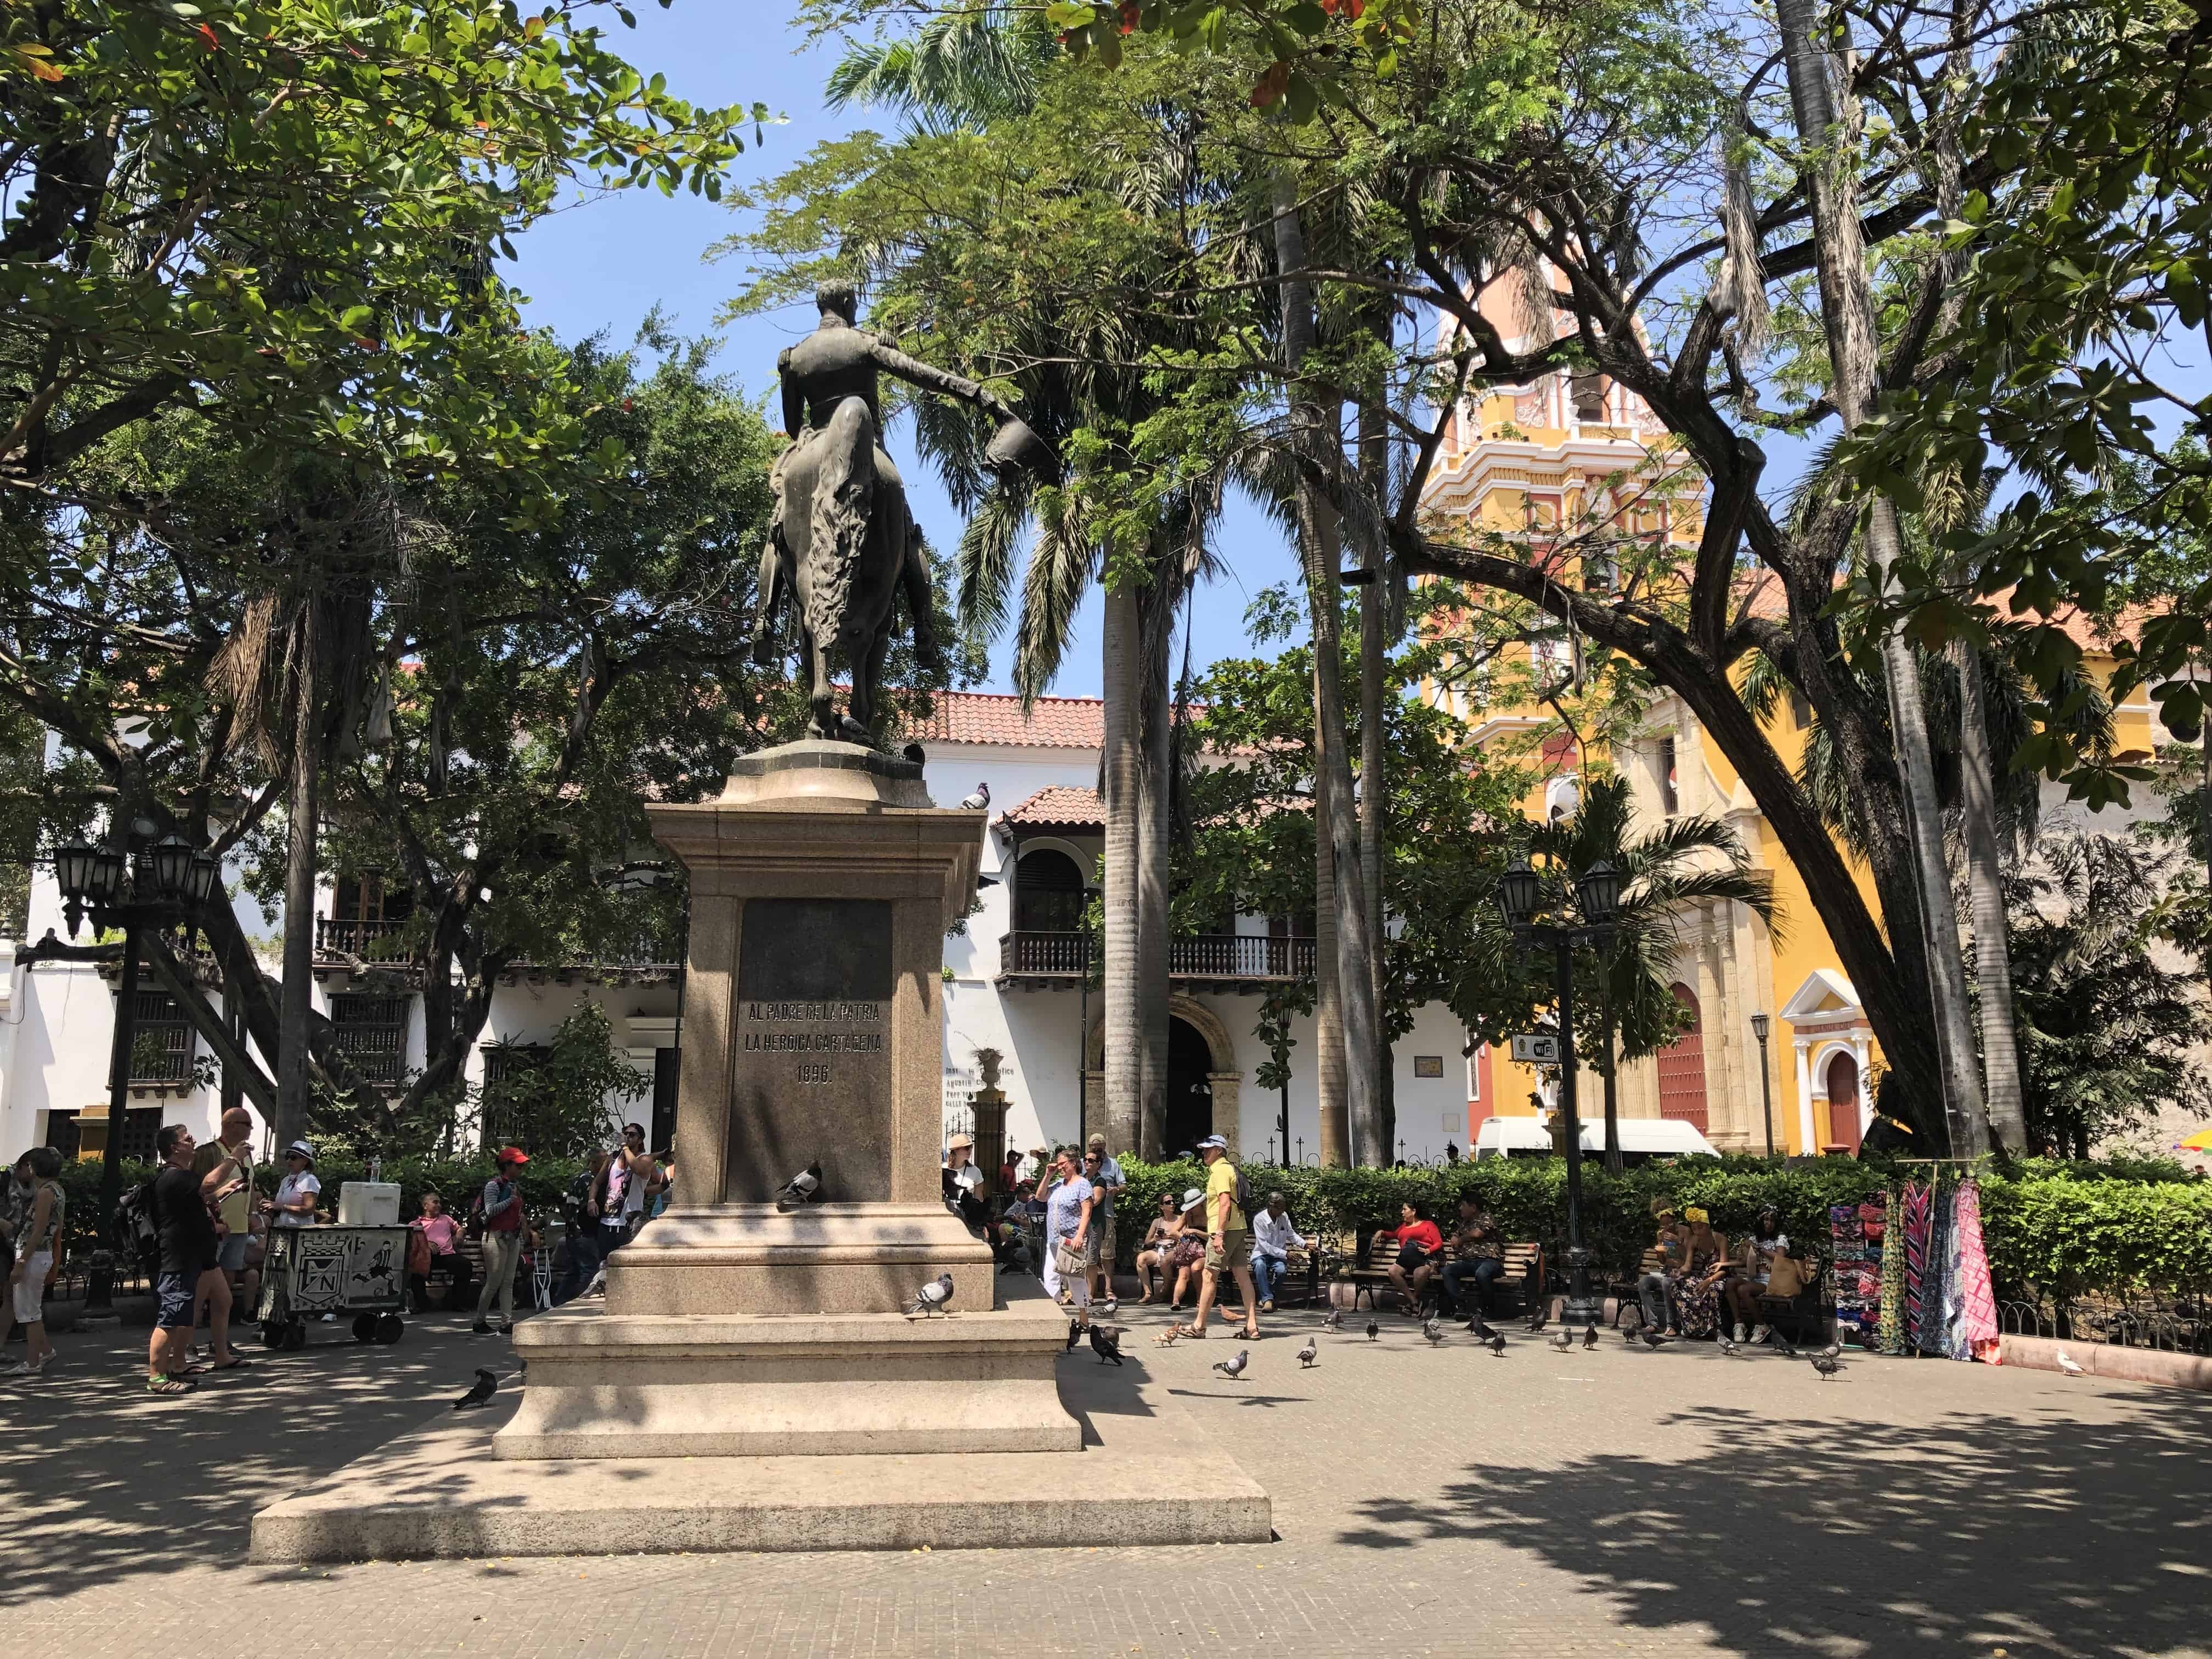 Parque de Bolívar in El Centro, Cartagena, Colombia